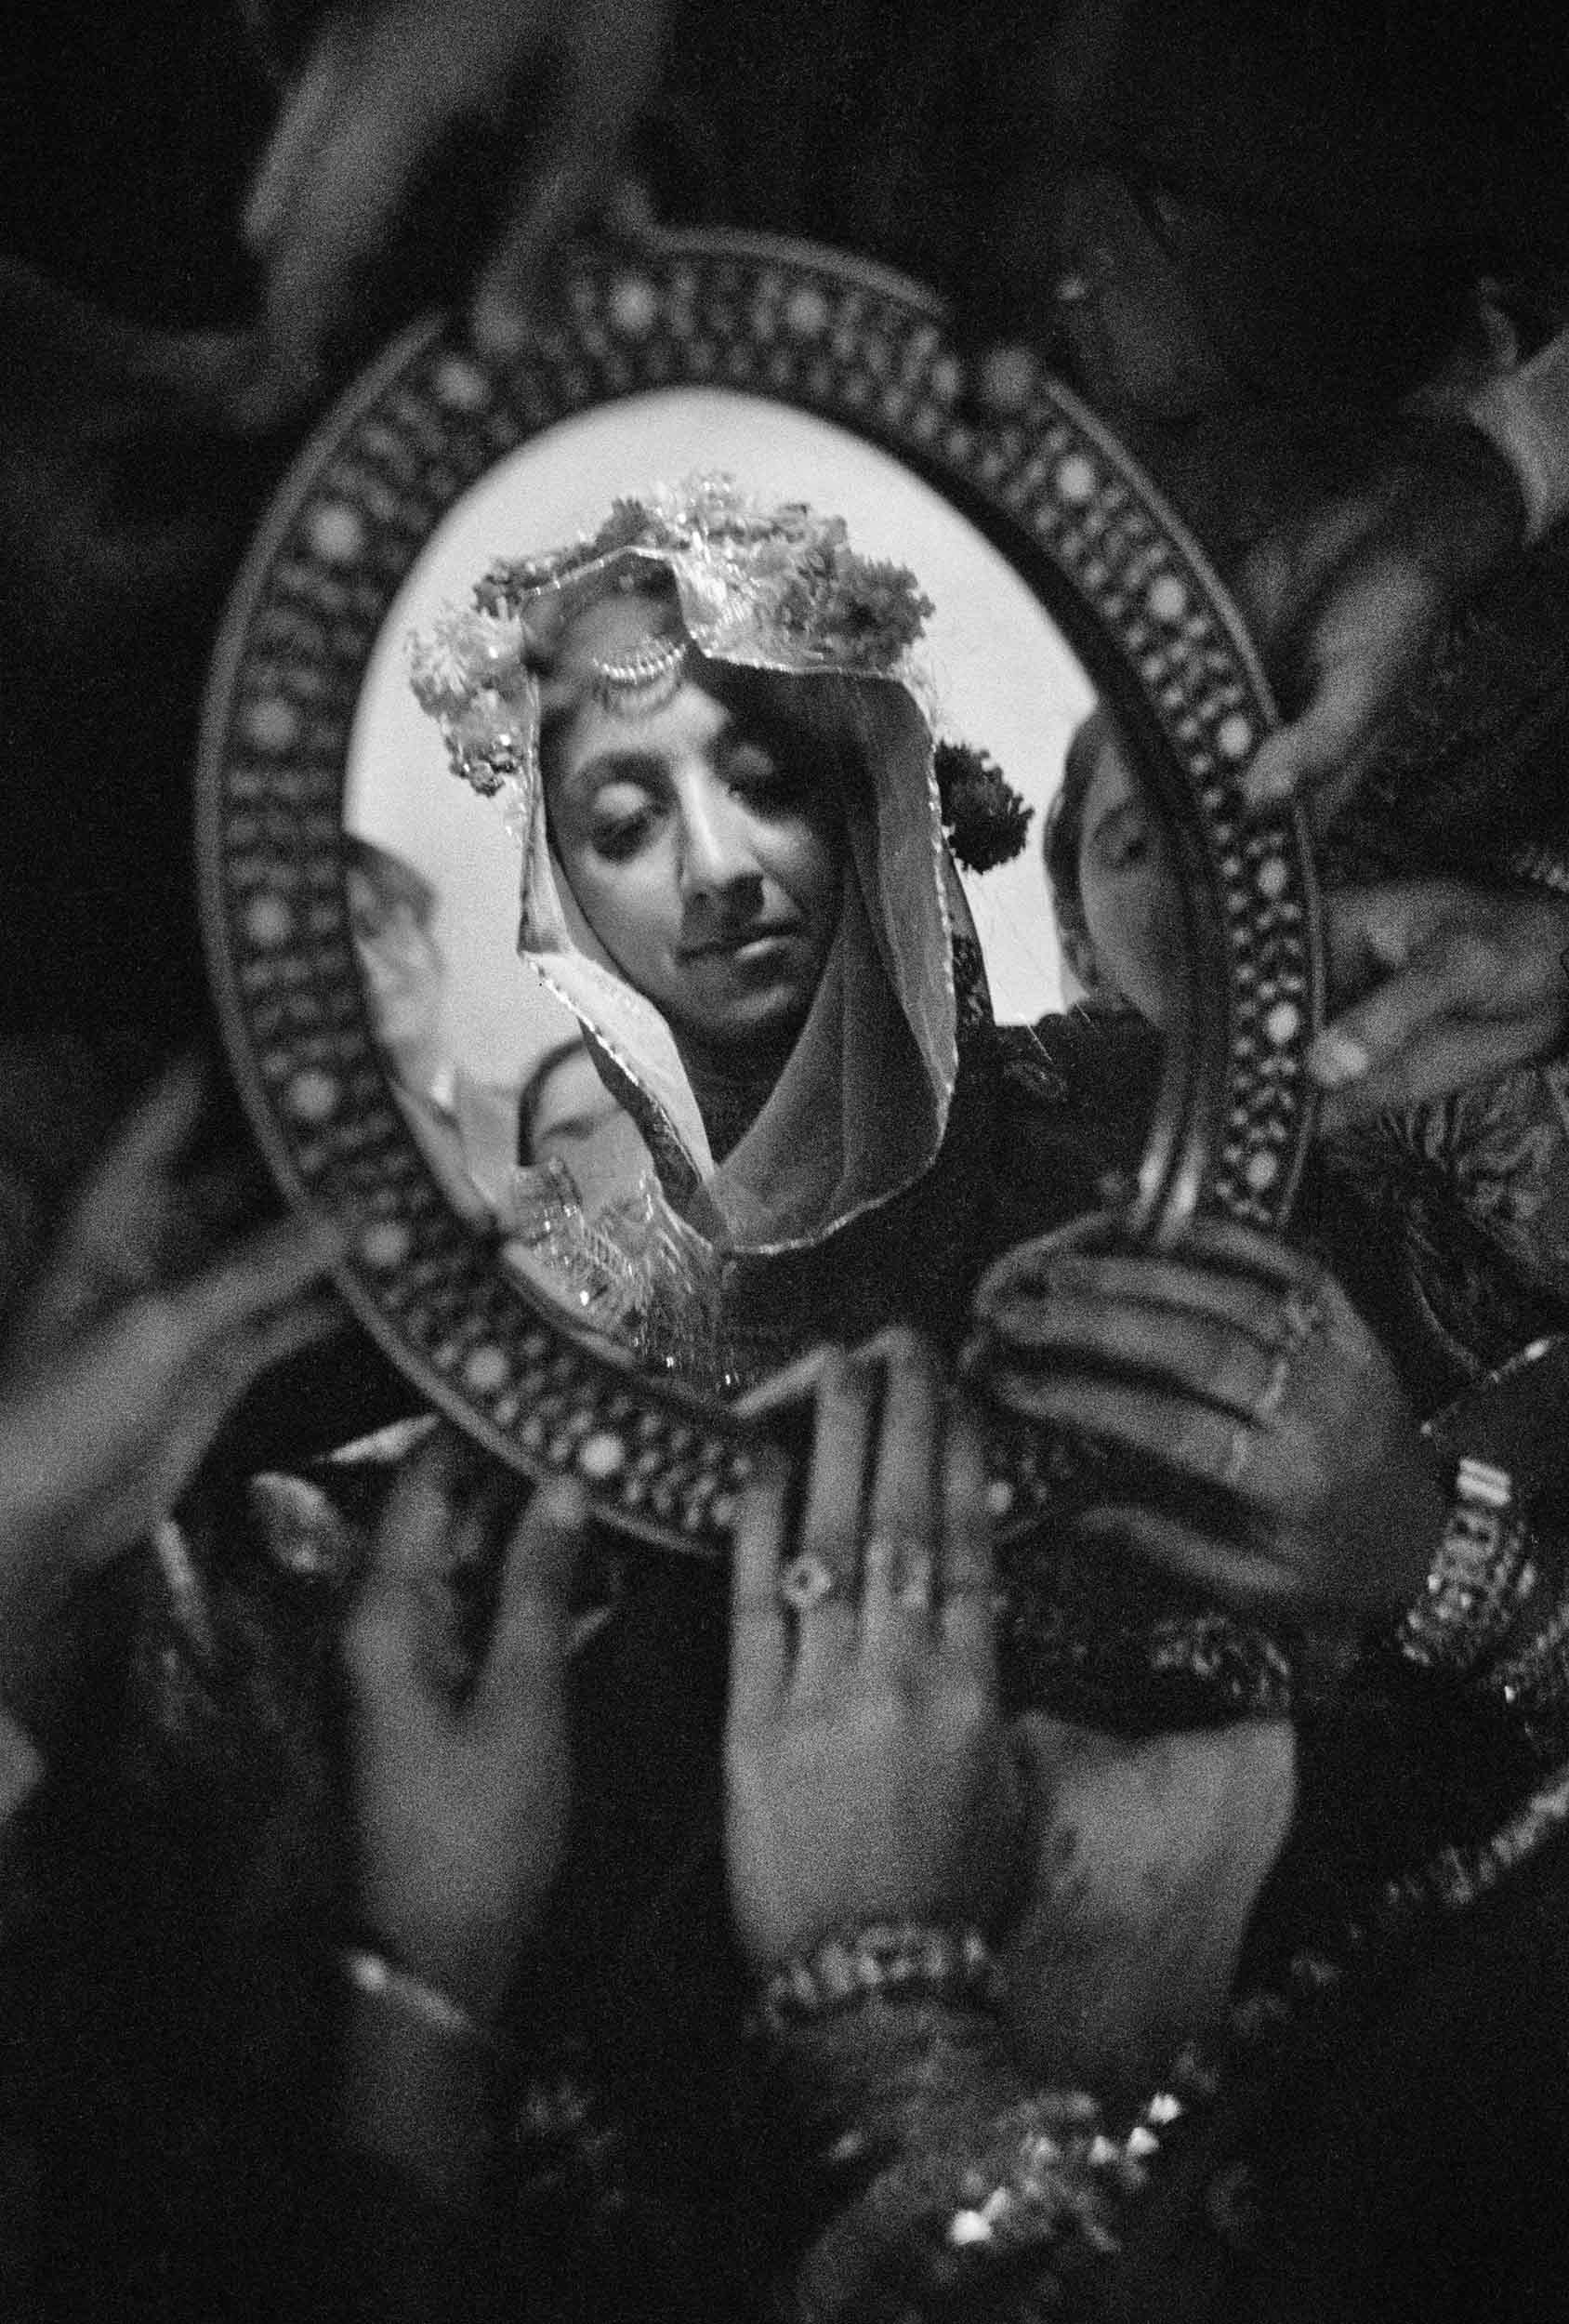 Mariage musulman, fiancé découvrant le visage de sa fiancée dans un miroir, Pakistan